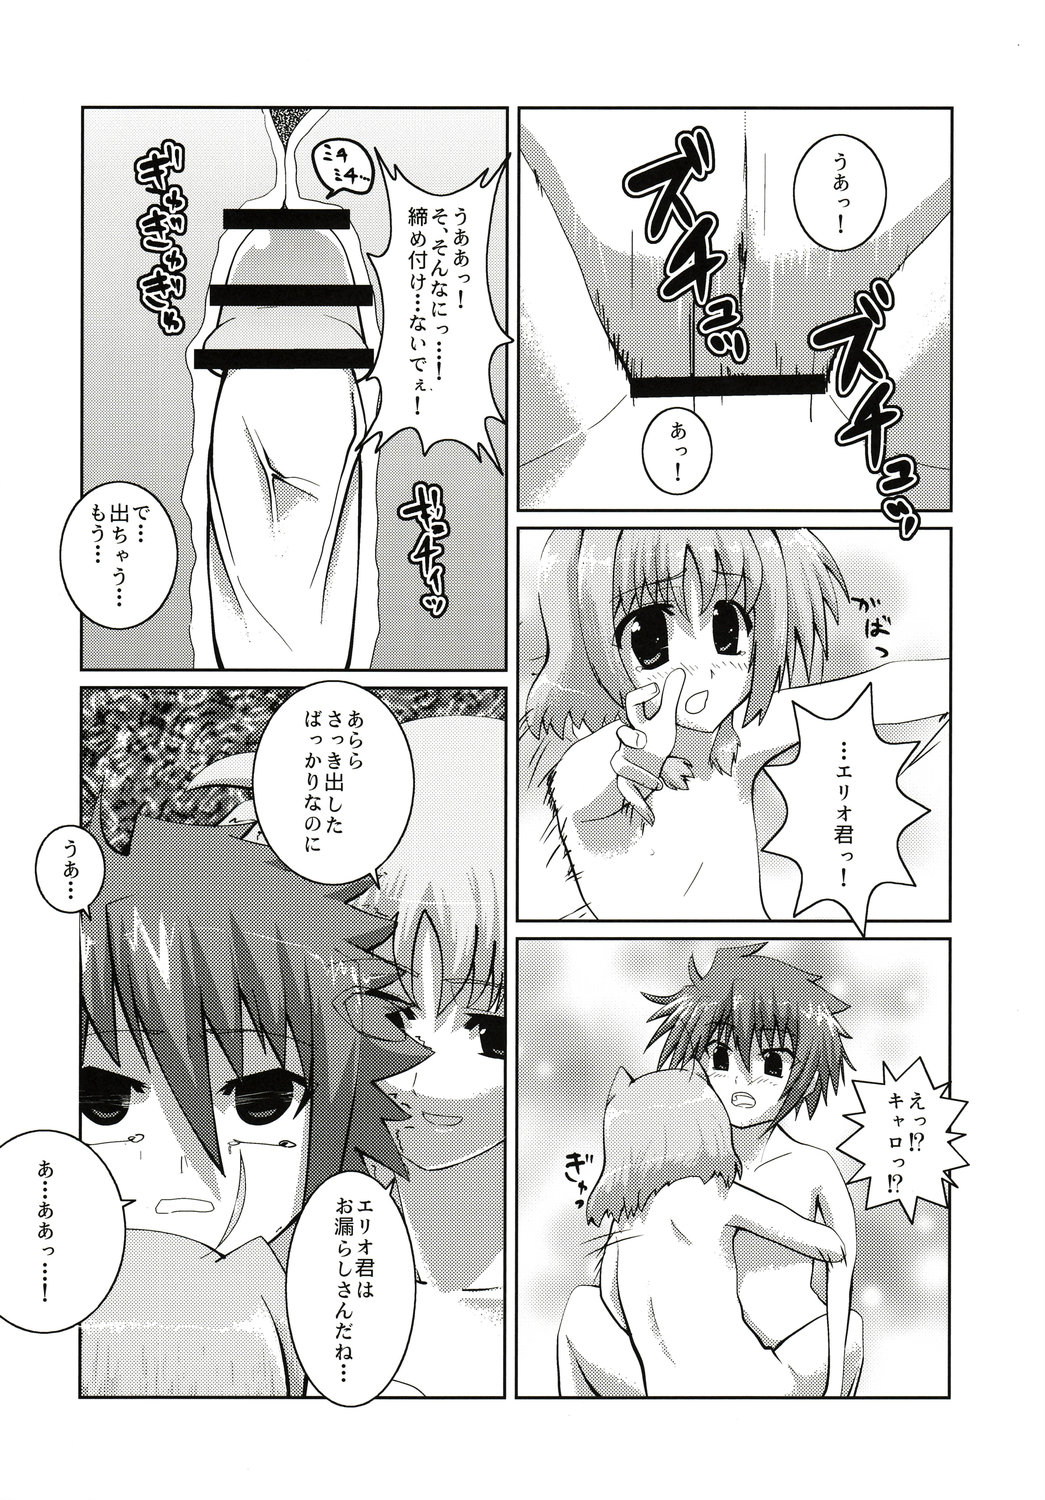 (SC37) [SDM (RX)] Caro ga Erio o Semeru Hon Fate-san mo iru yo (Mahou Shoujo Lyrical Nanoha StrikerS) page 13 full